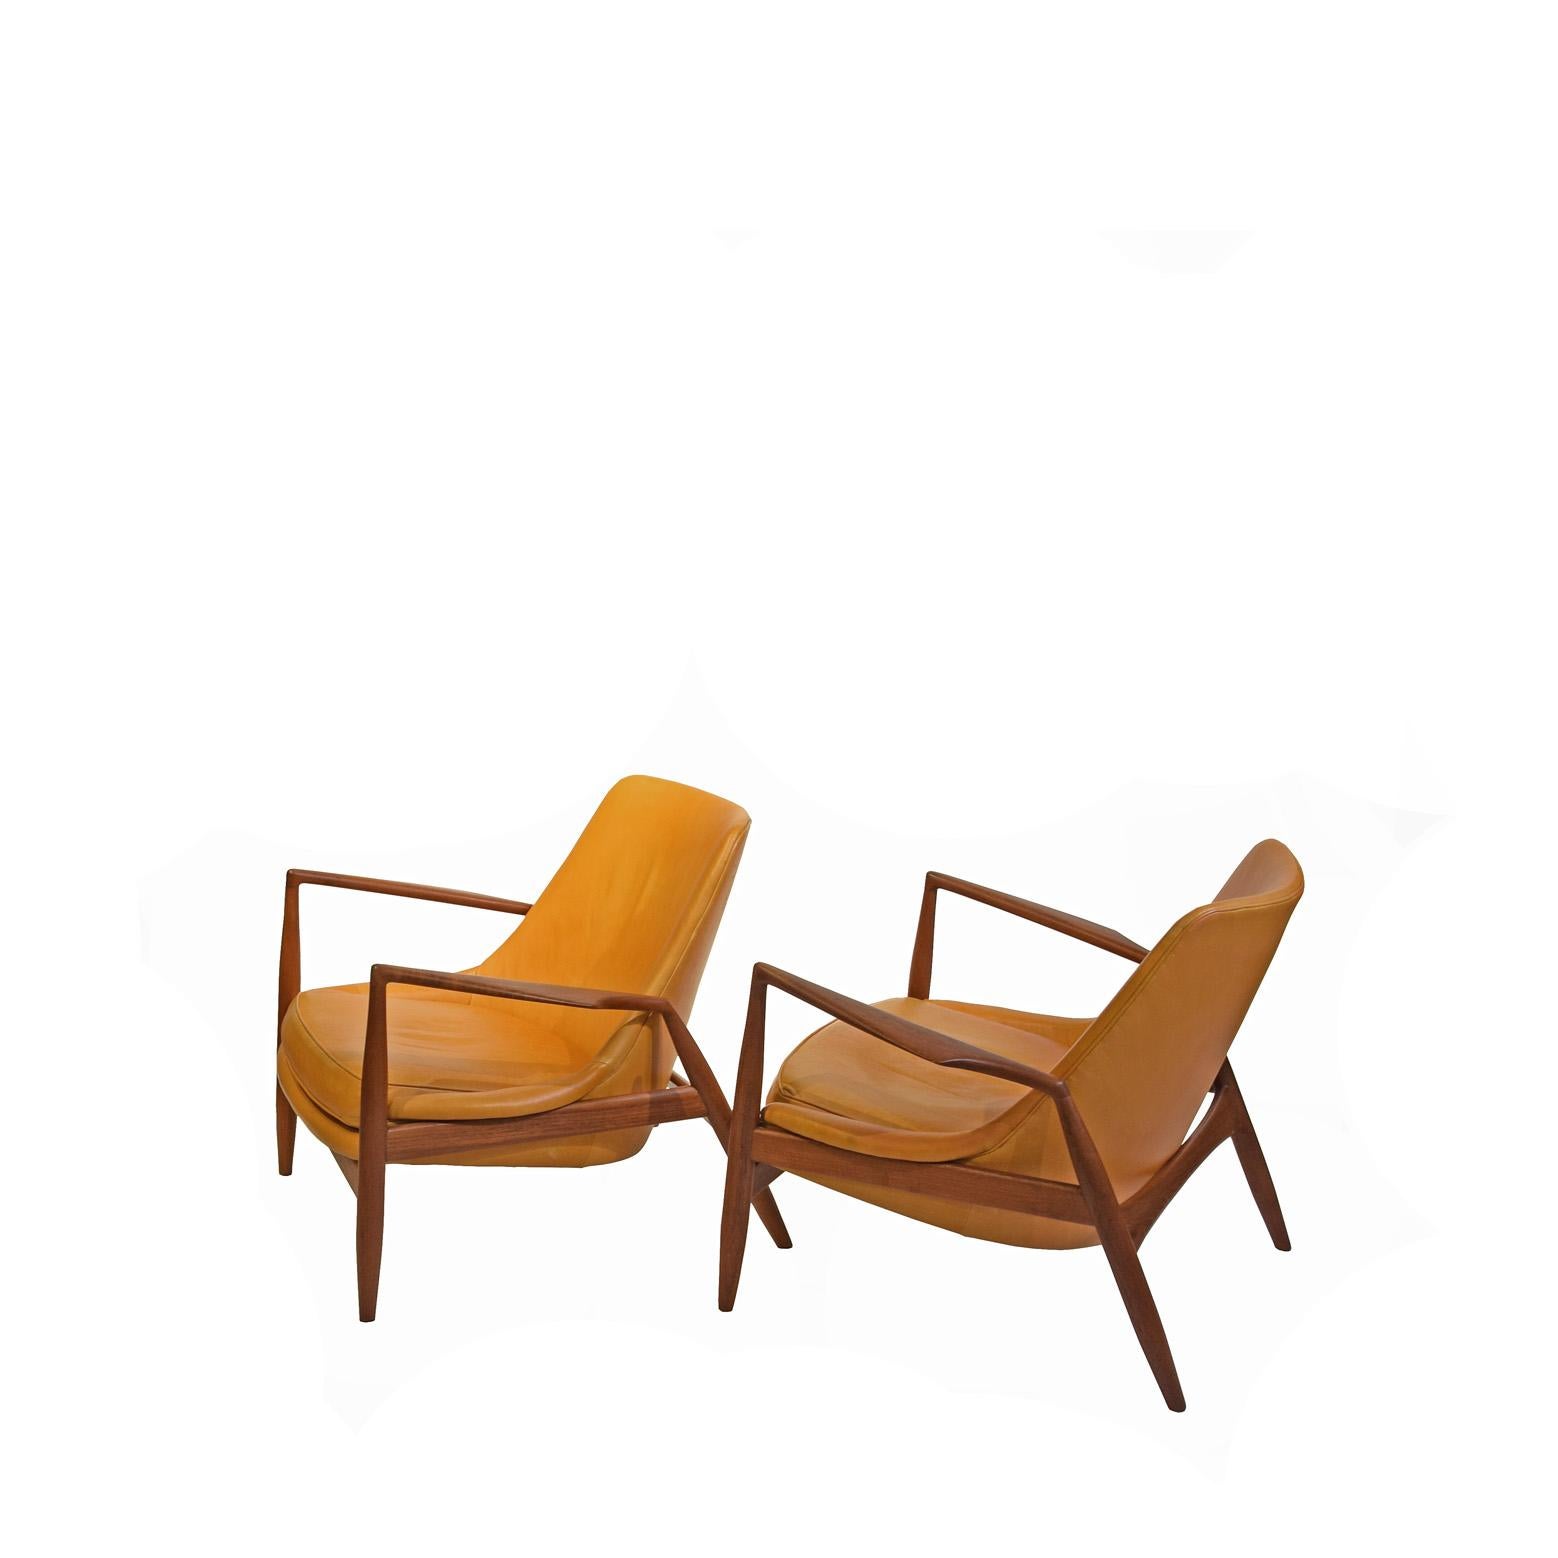 Teck massif Ib Kofod-Larsen pour OPE Möbler, paire de chaises longues (Seal) modèle 503-799, teck et cuir, Suède, 1956 revêtement en cuir plus récent